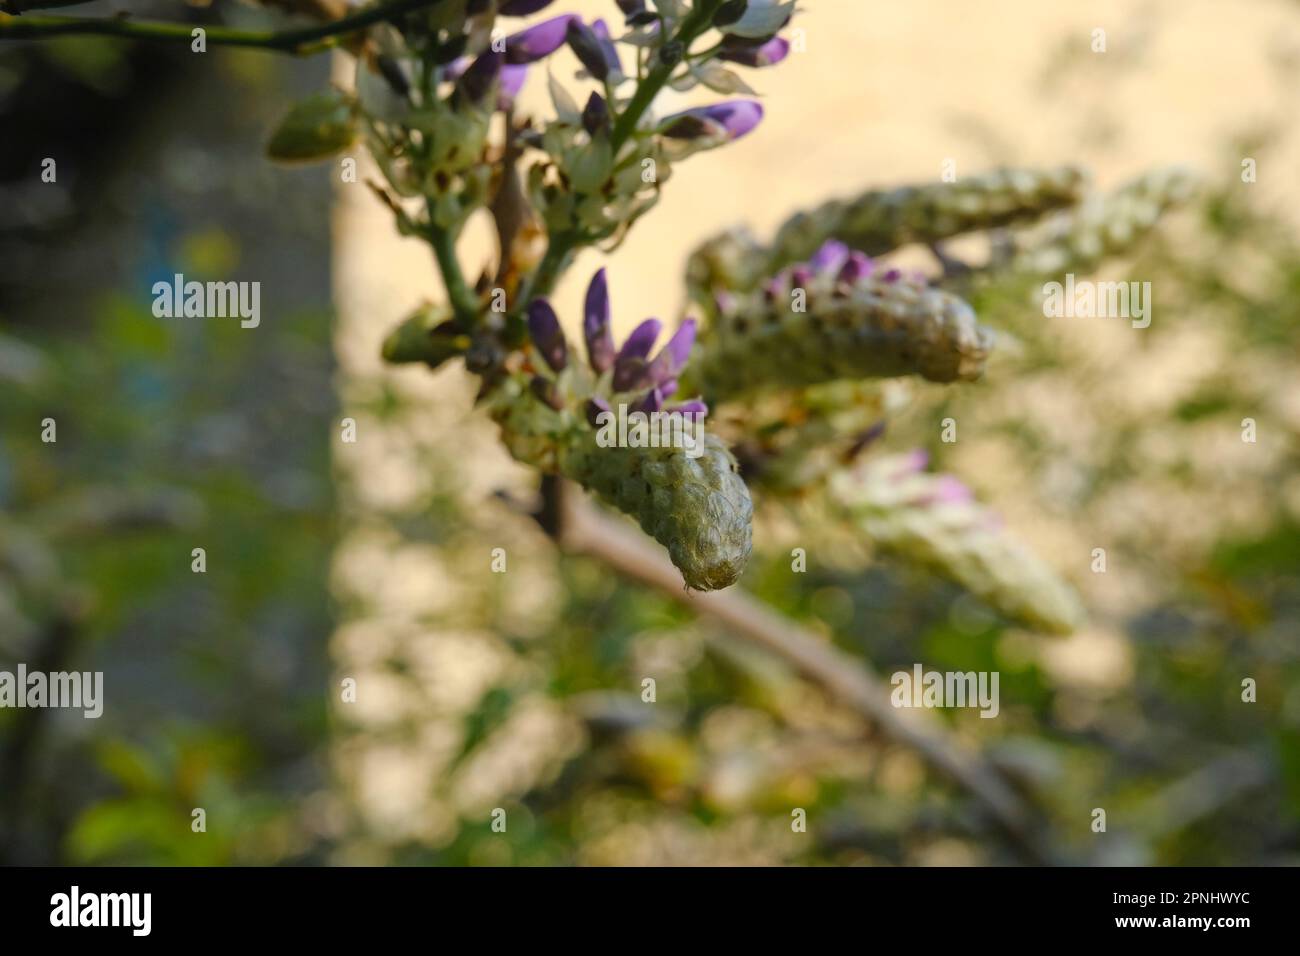 La wisteria bourgeon se trouve à proximité du jardin et de la maison au soleil. Fleurs violettes sur une branche. arrière-plan naturel Banque D'Images